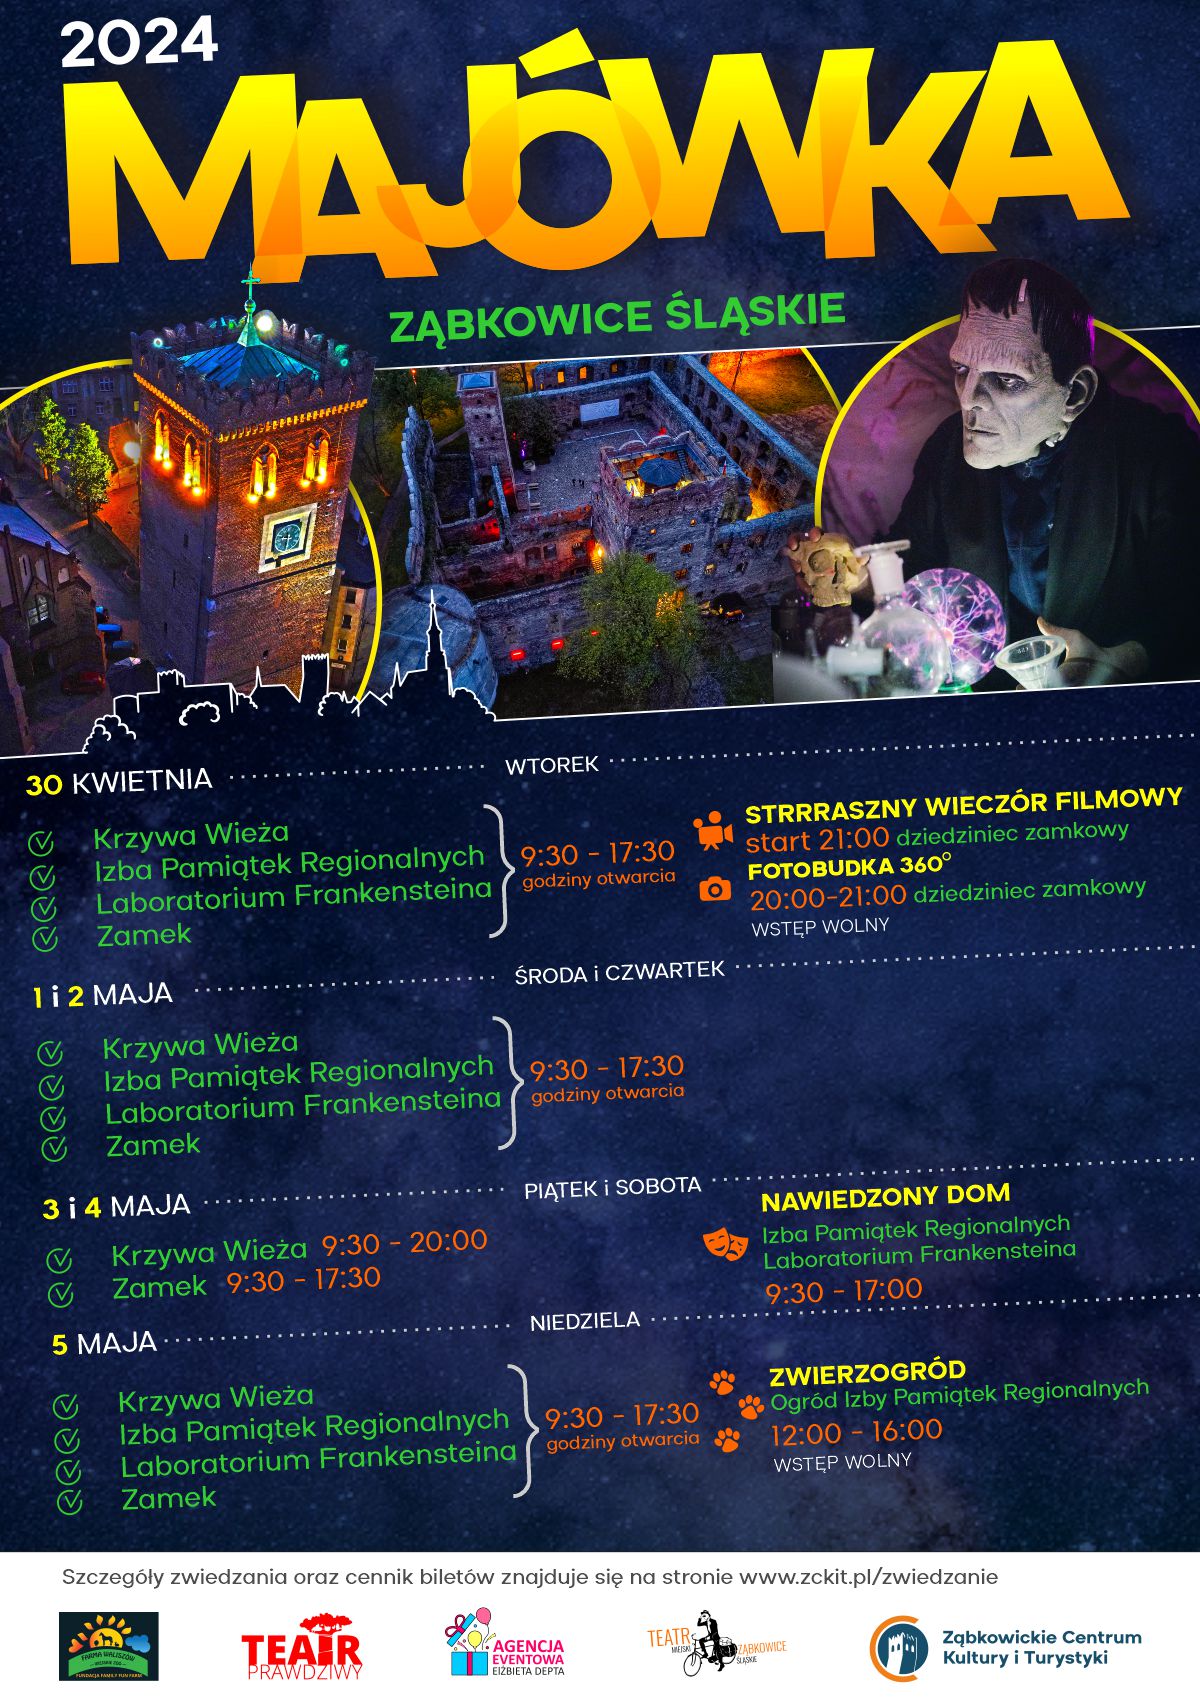 Plakat informujący o atrakcjach w Ząbkowicach Śląskich podczas Majówki 2024. Na plakacie znajdują się zdjęcia Krzywej Wieży, Zamku i Laboratorium Frankensteina.